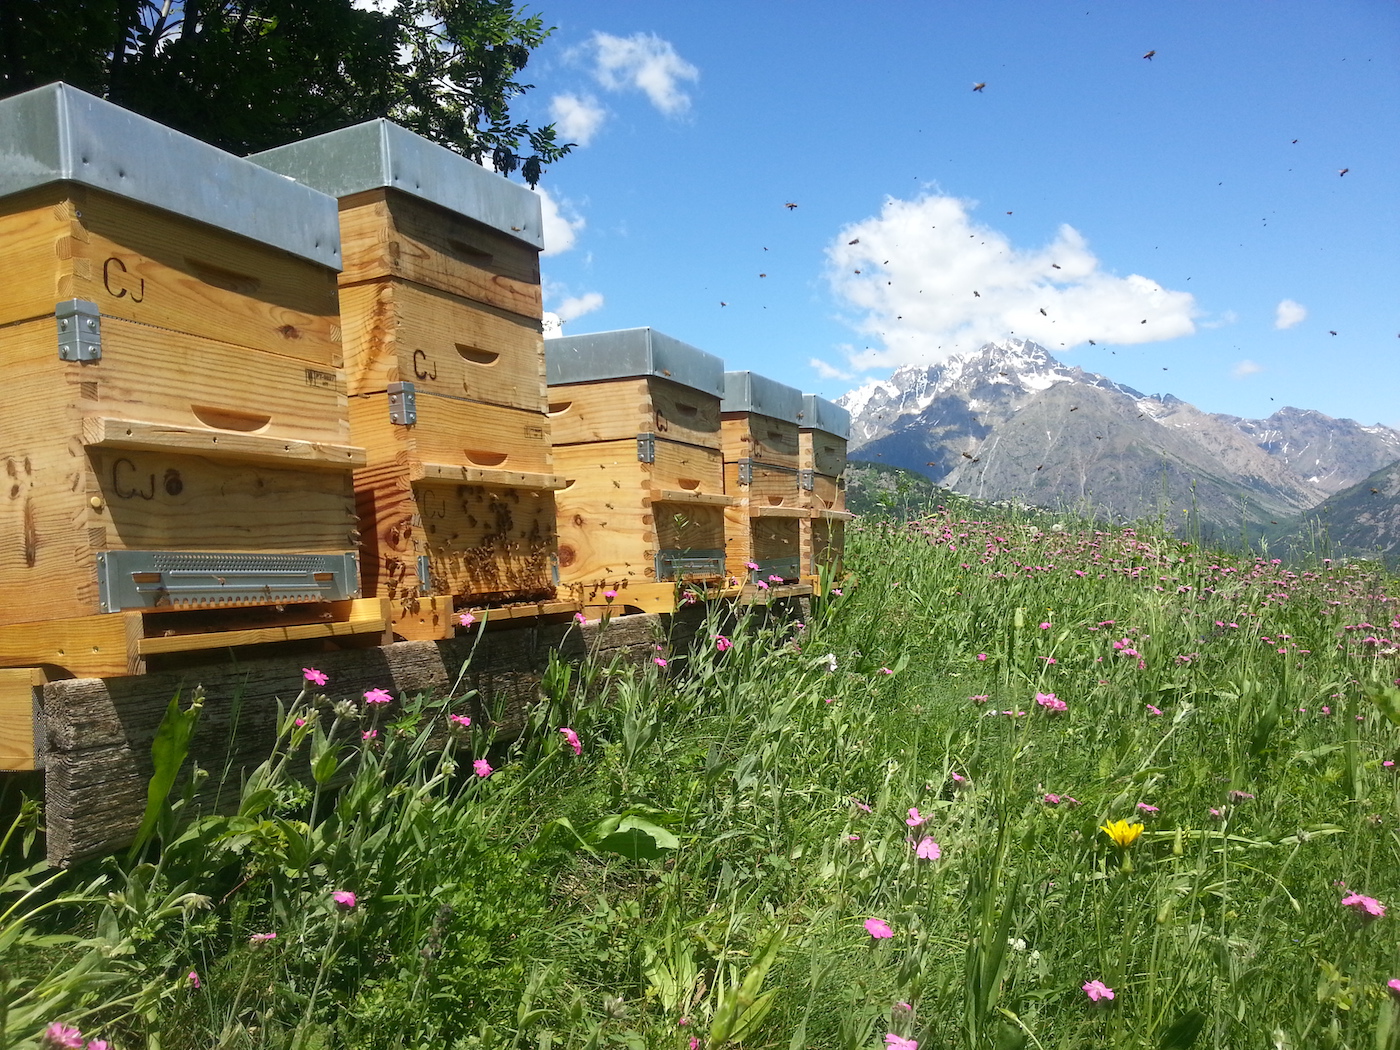 Parrainez une ruche pour sauver les abeilles avec "Un toit pour les abeilles"